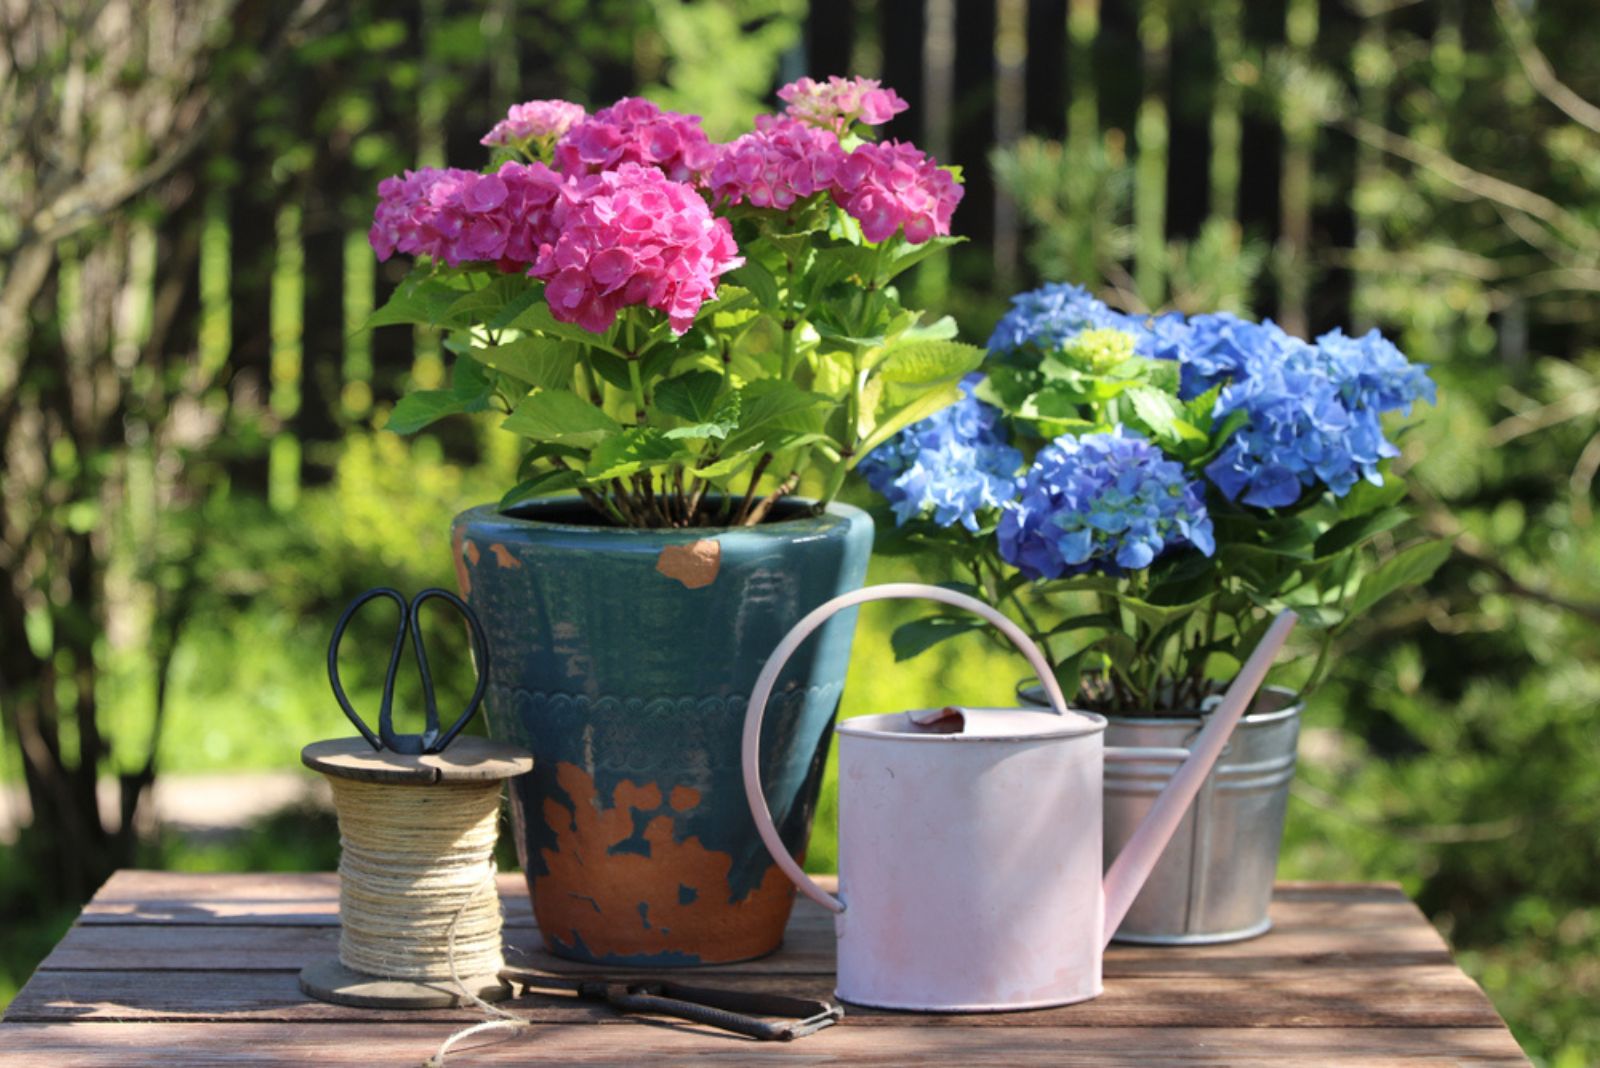 Garden scene with plant in vintage old ceramic pot